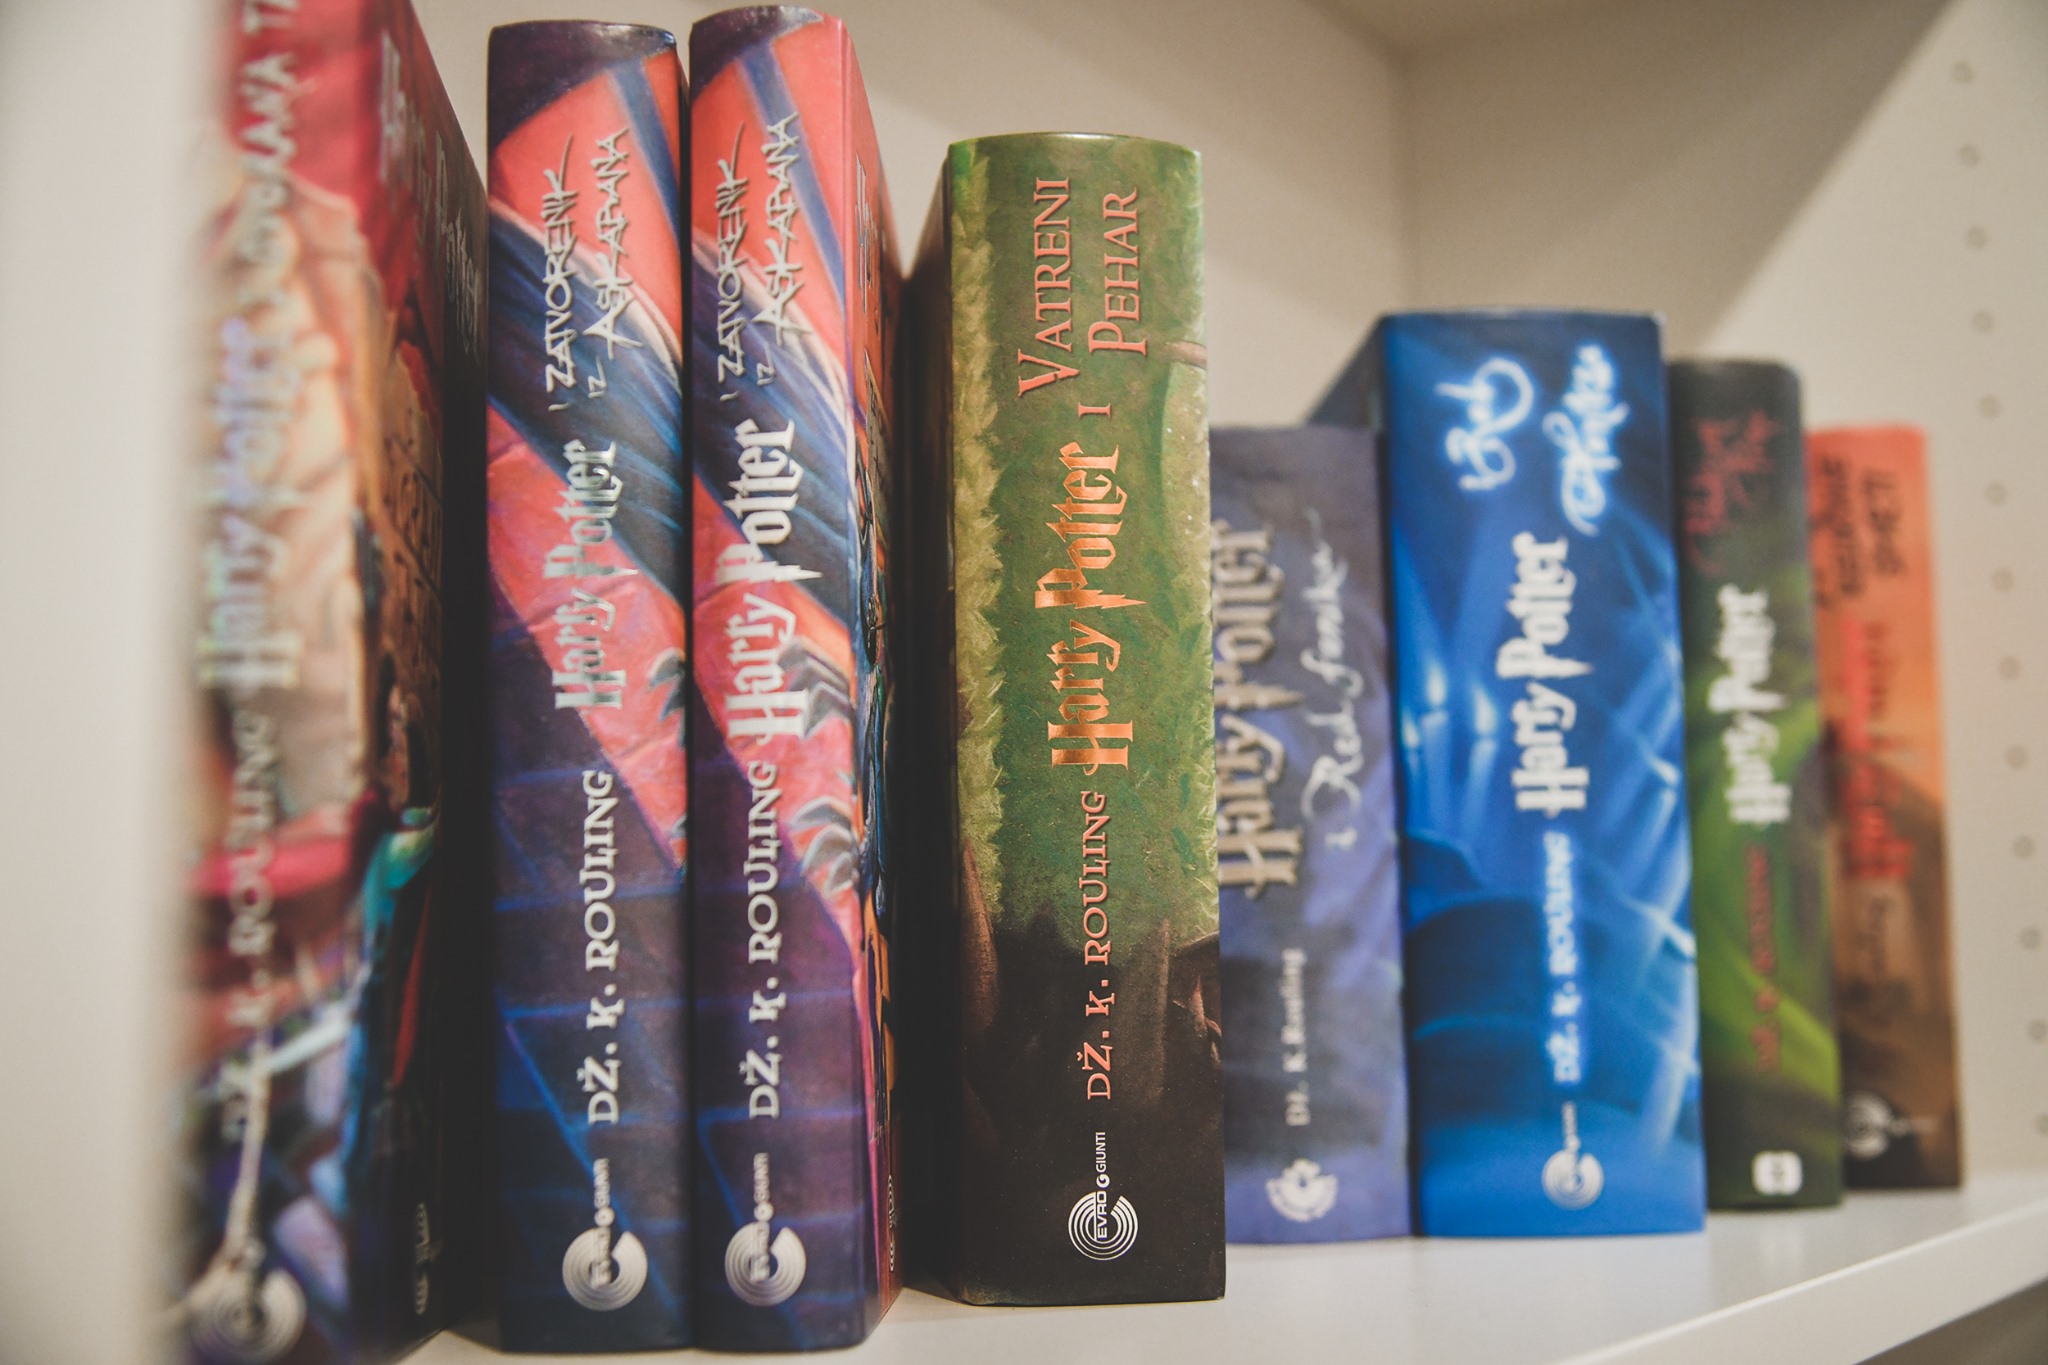 Predstavljena je izložba svjetskih izdanja Harryja Pottera u Rijeci!